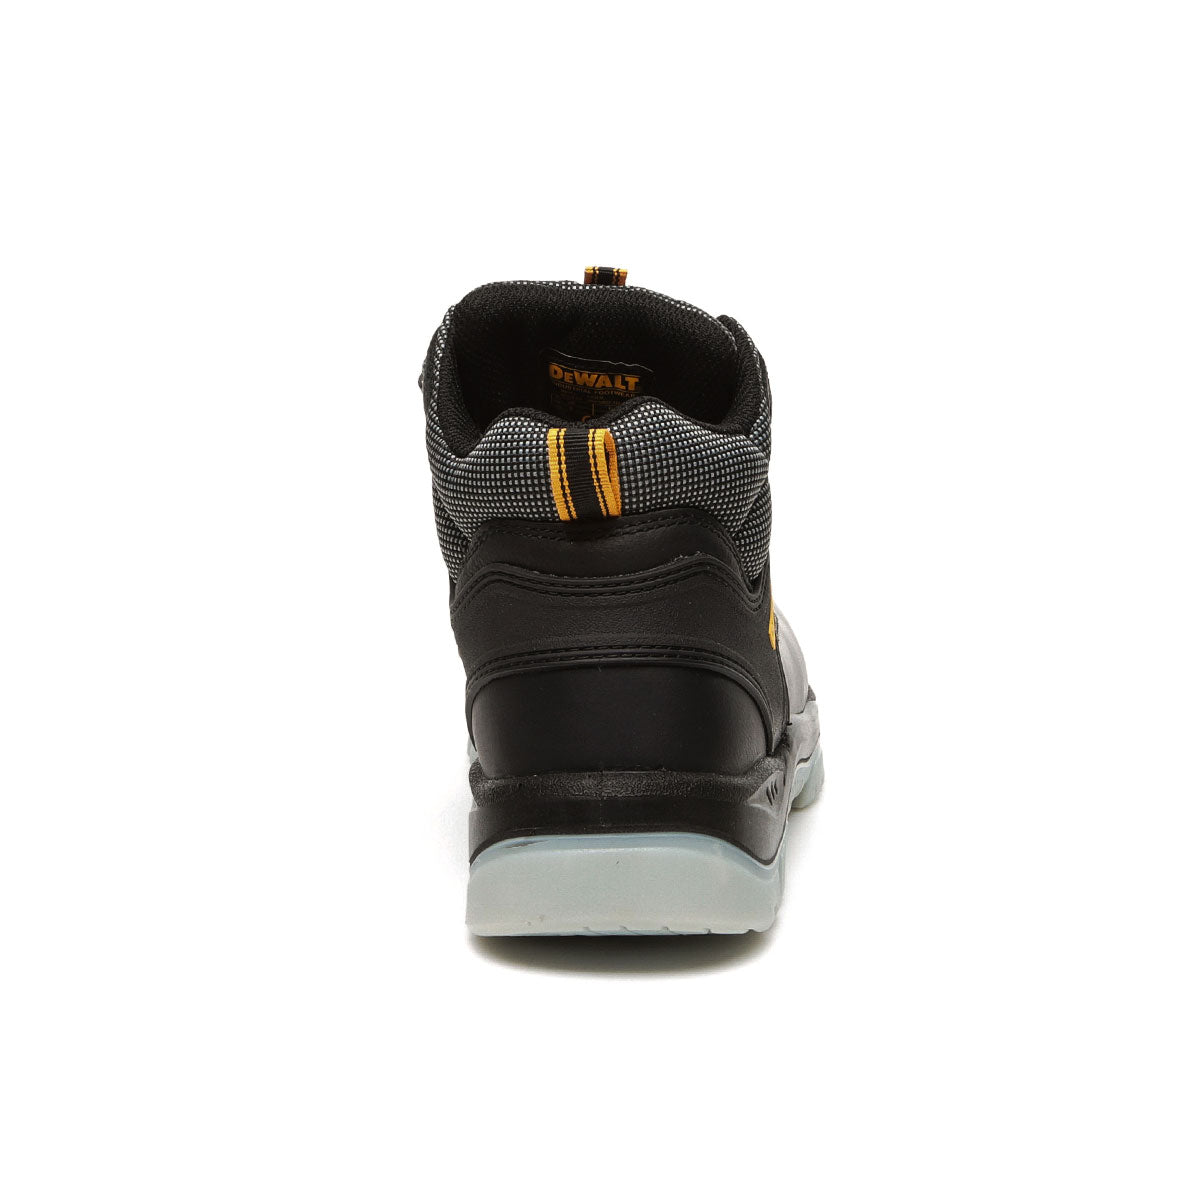 DeWalt Laser Black Safety Hiker Boots - Shoe Store Direct